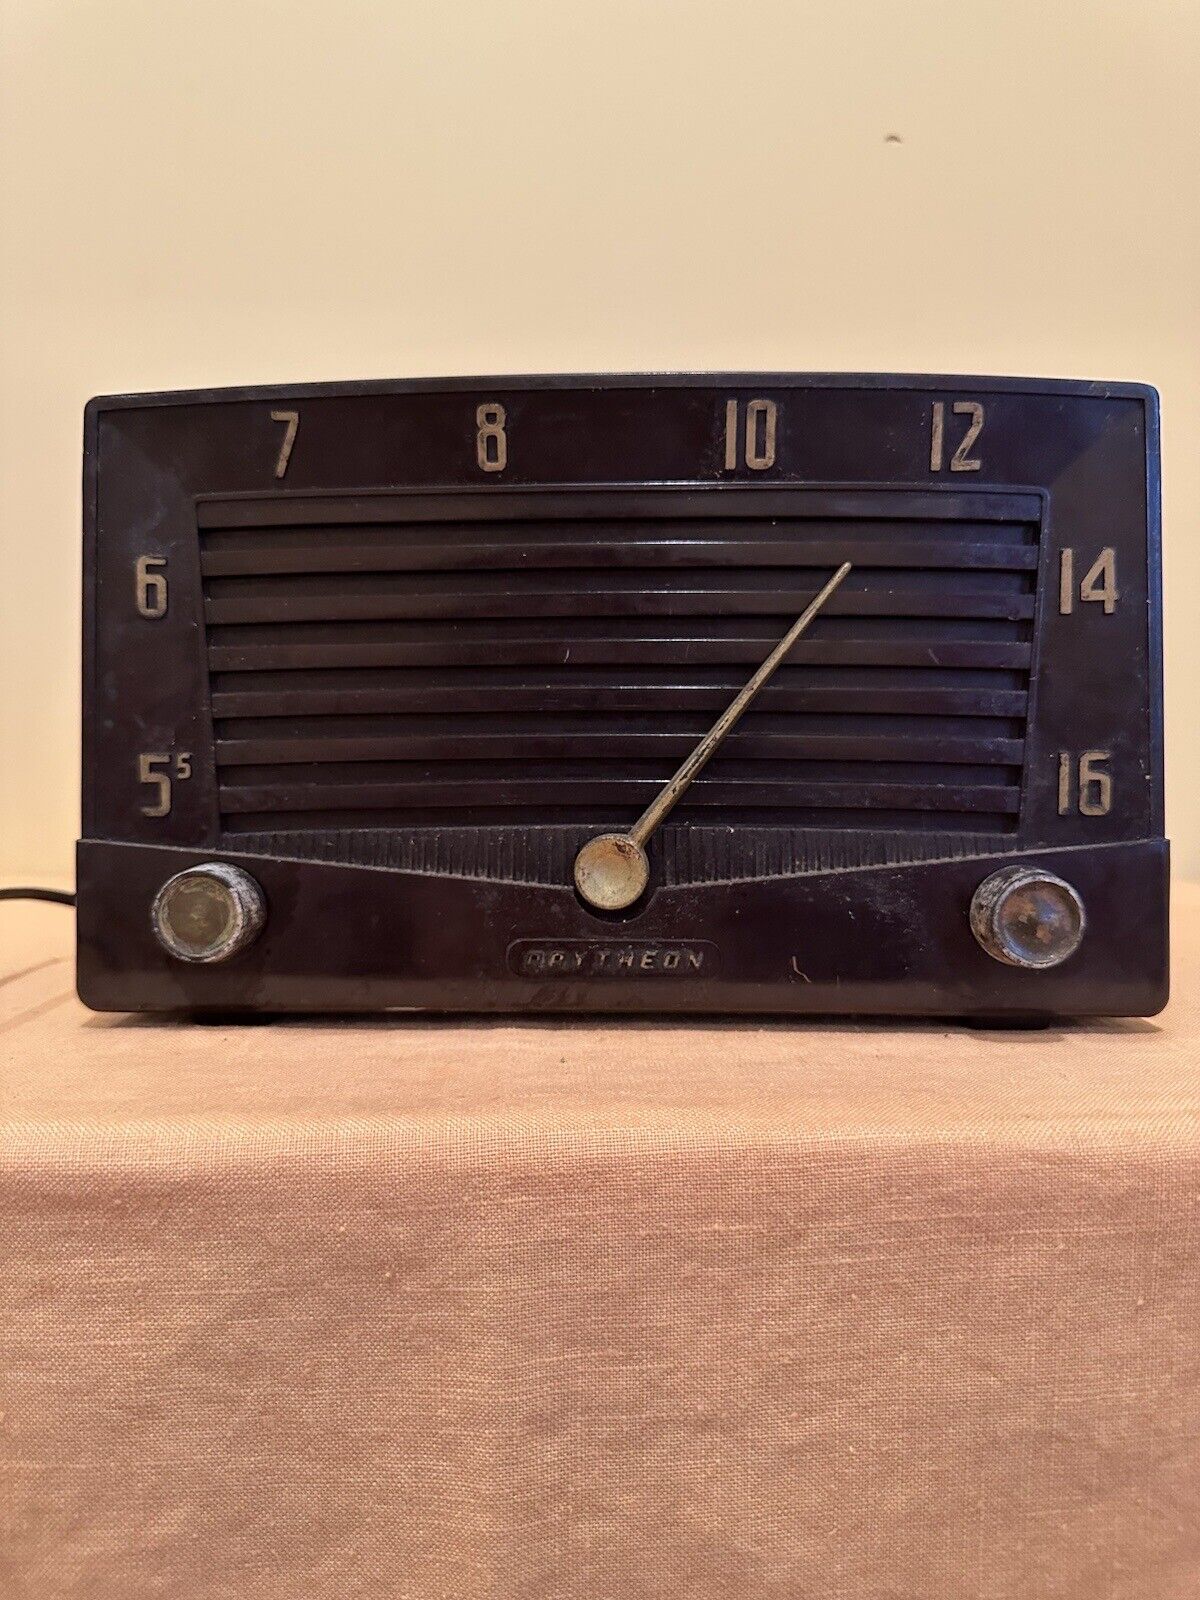 Raytheon Bakelite Vintage Radio Model 5R-10B